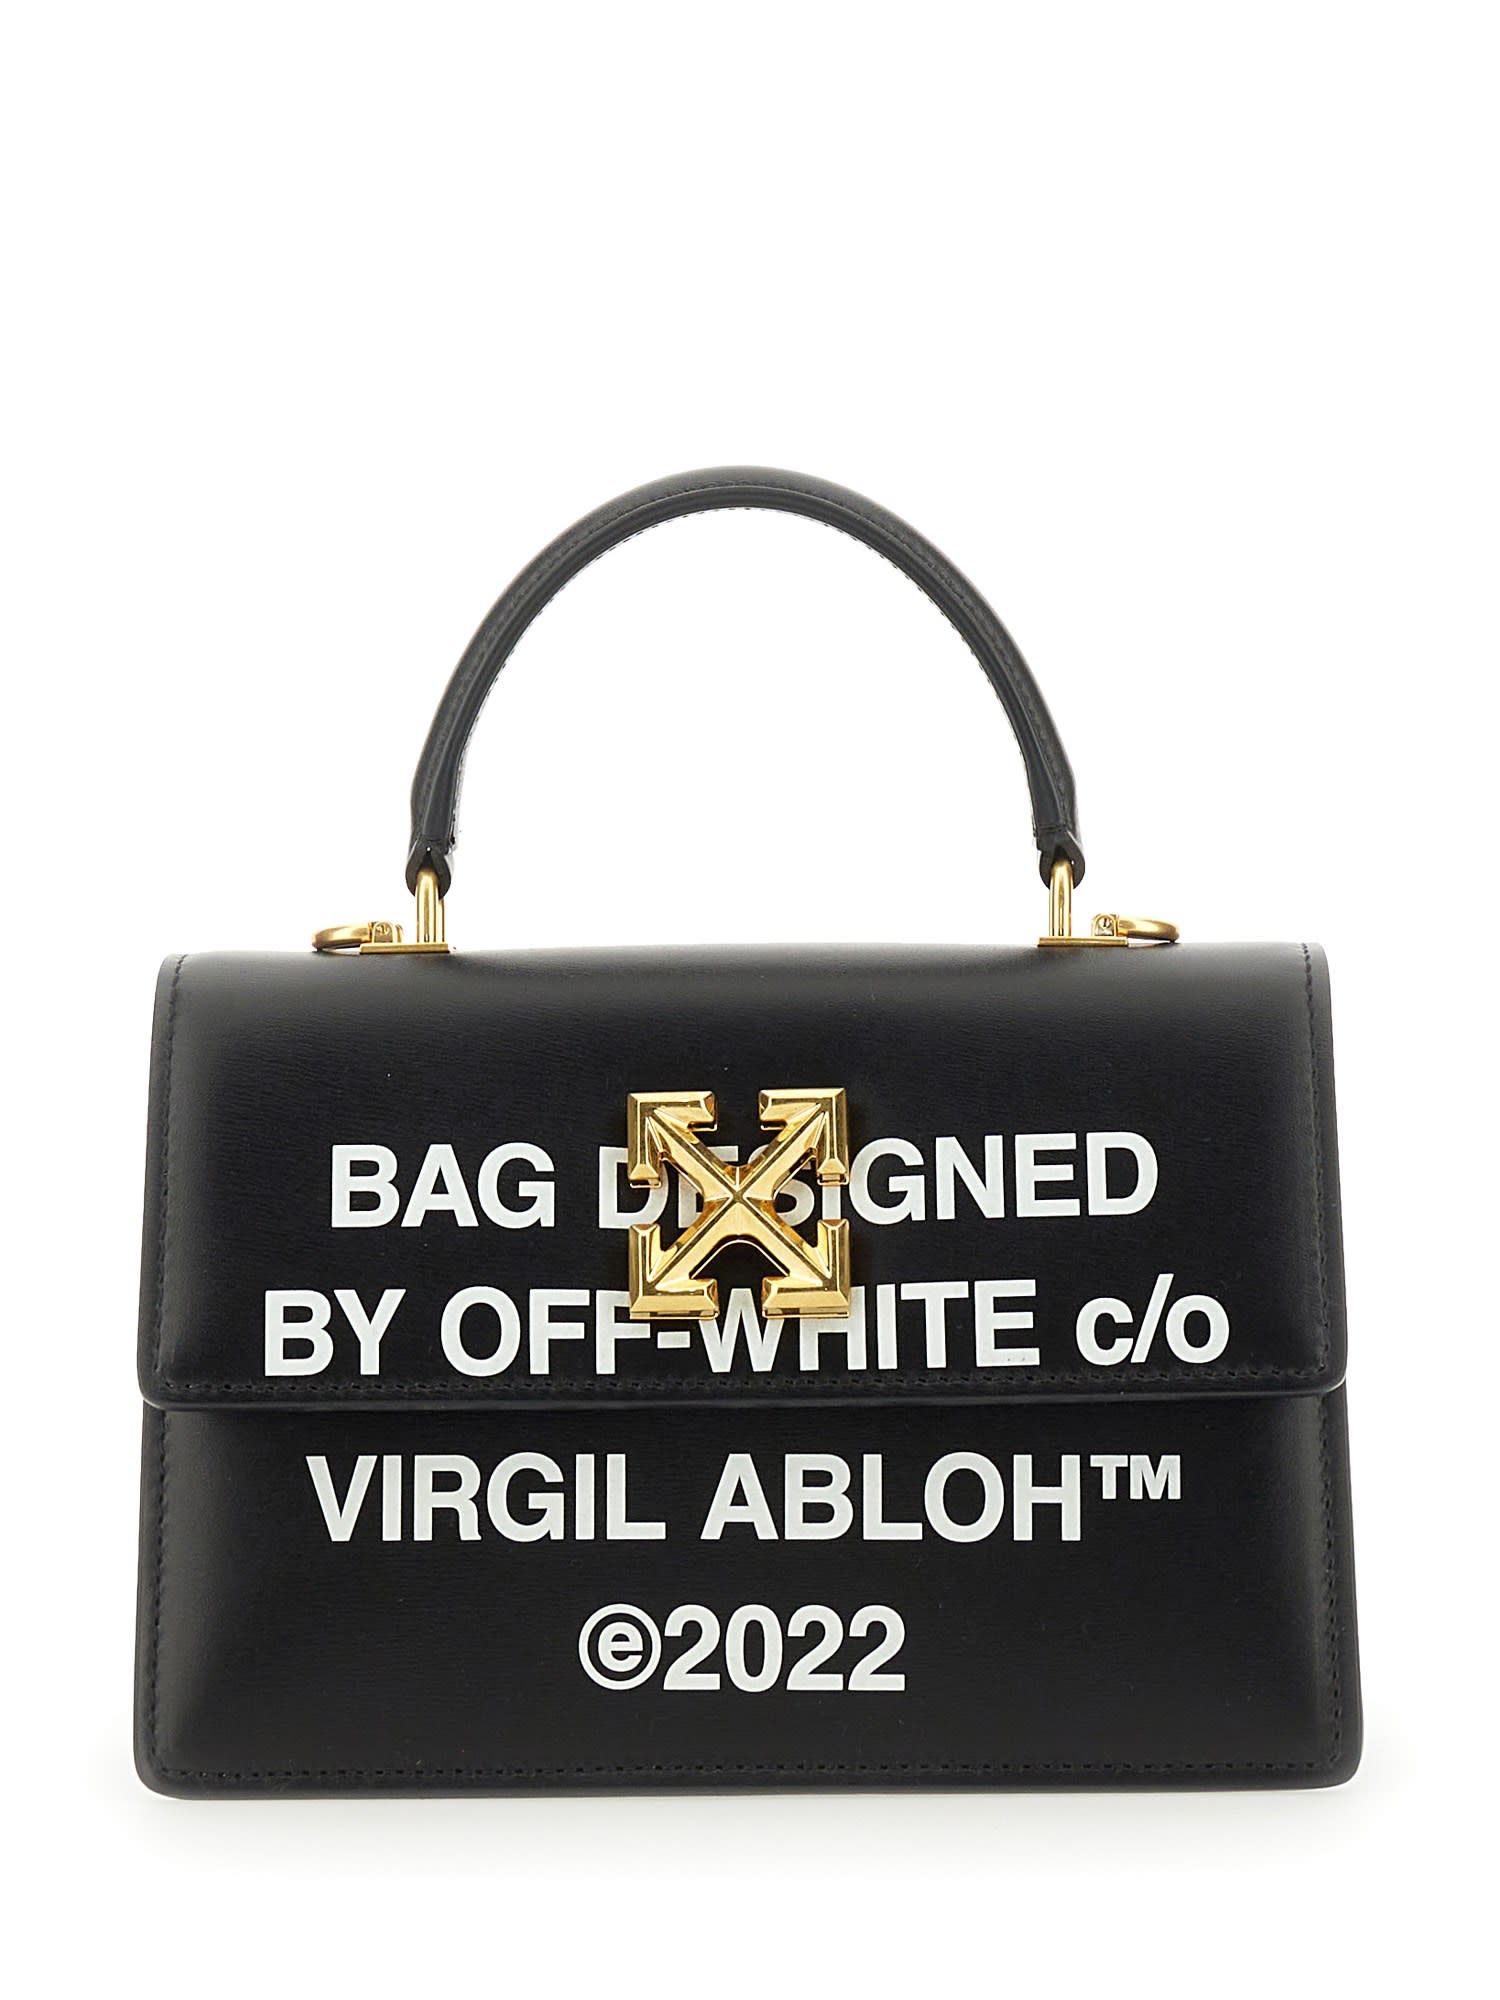 Off-White c/o Virgil Abloh 1.4 Jitney Bag